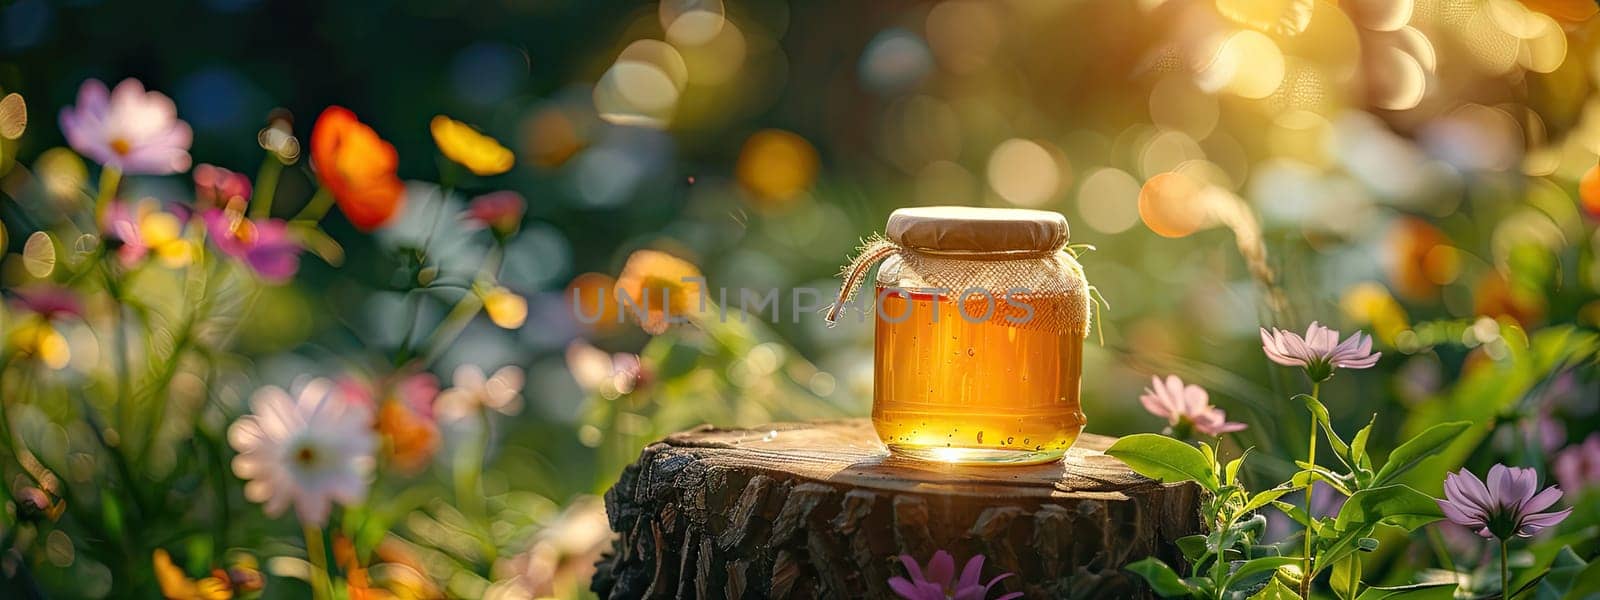 Jar of flower honey in the garden. Selective focus. food.